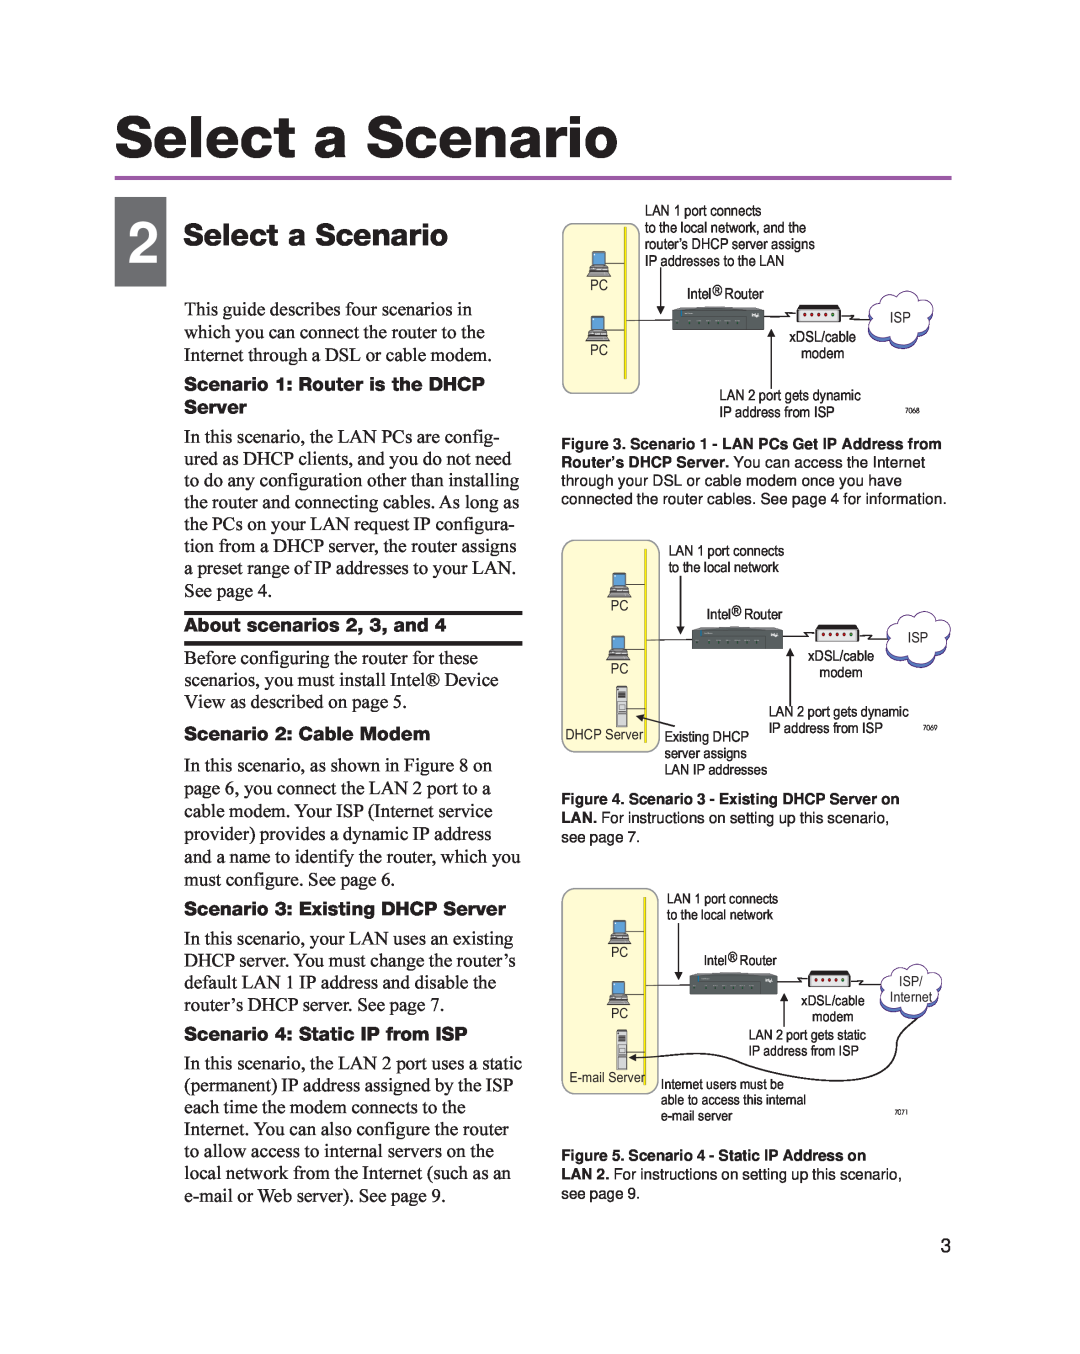 Intel 8205 Select a Scenario, Scenario 1 Router is the DHCP Server, About scenarios 2, 3, and, Scenario 2 Cable Modem 